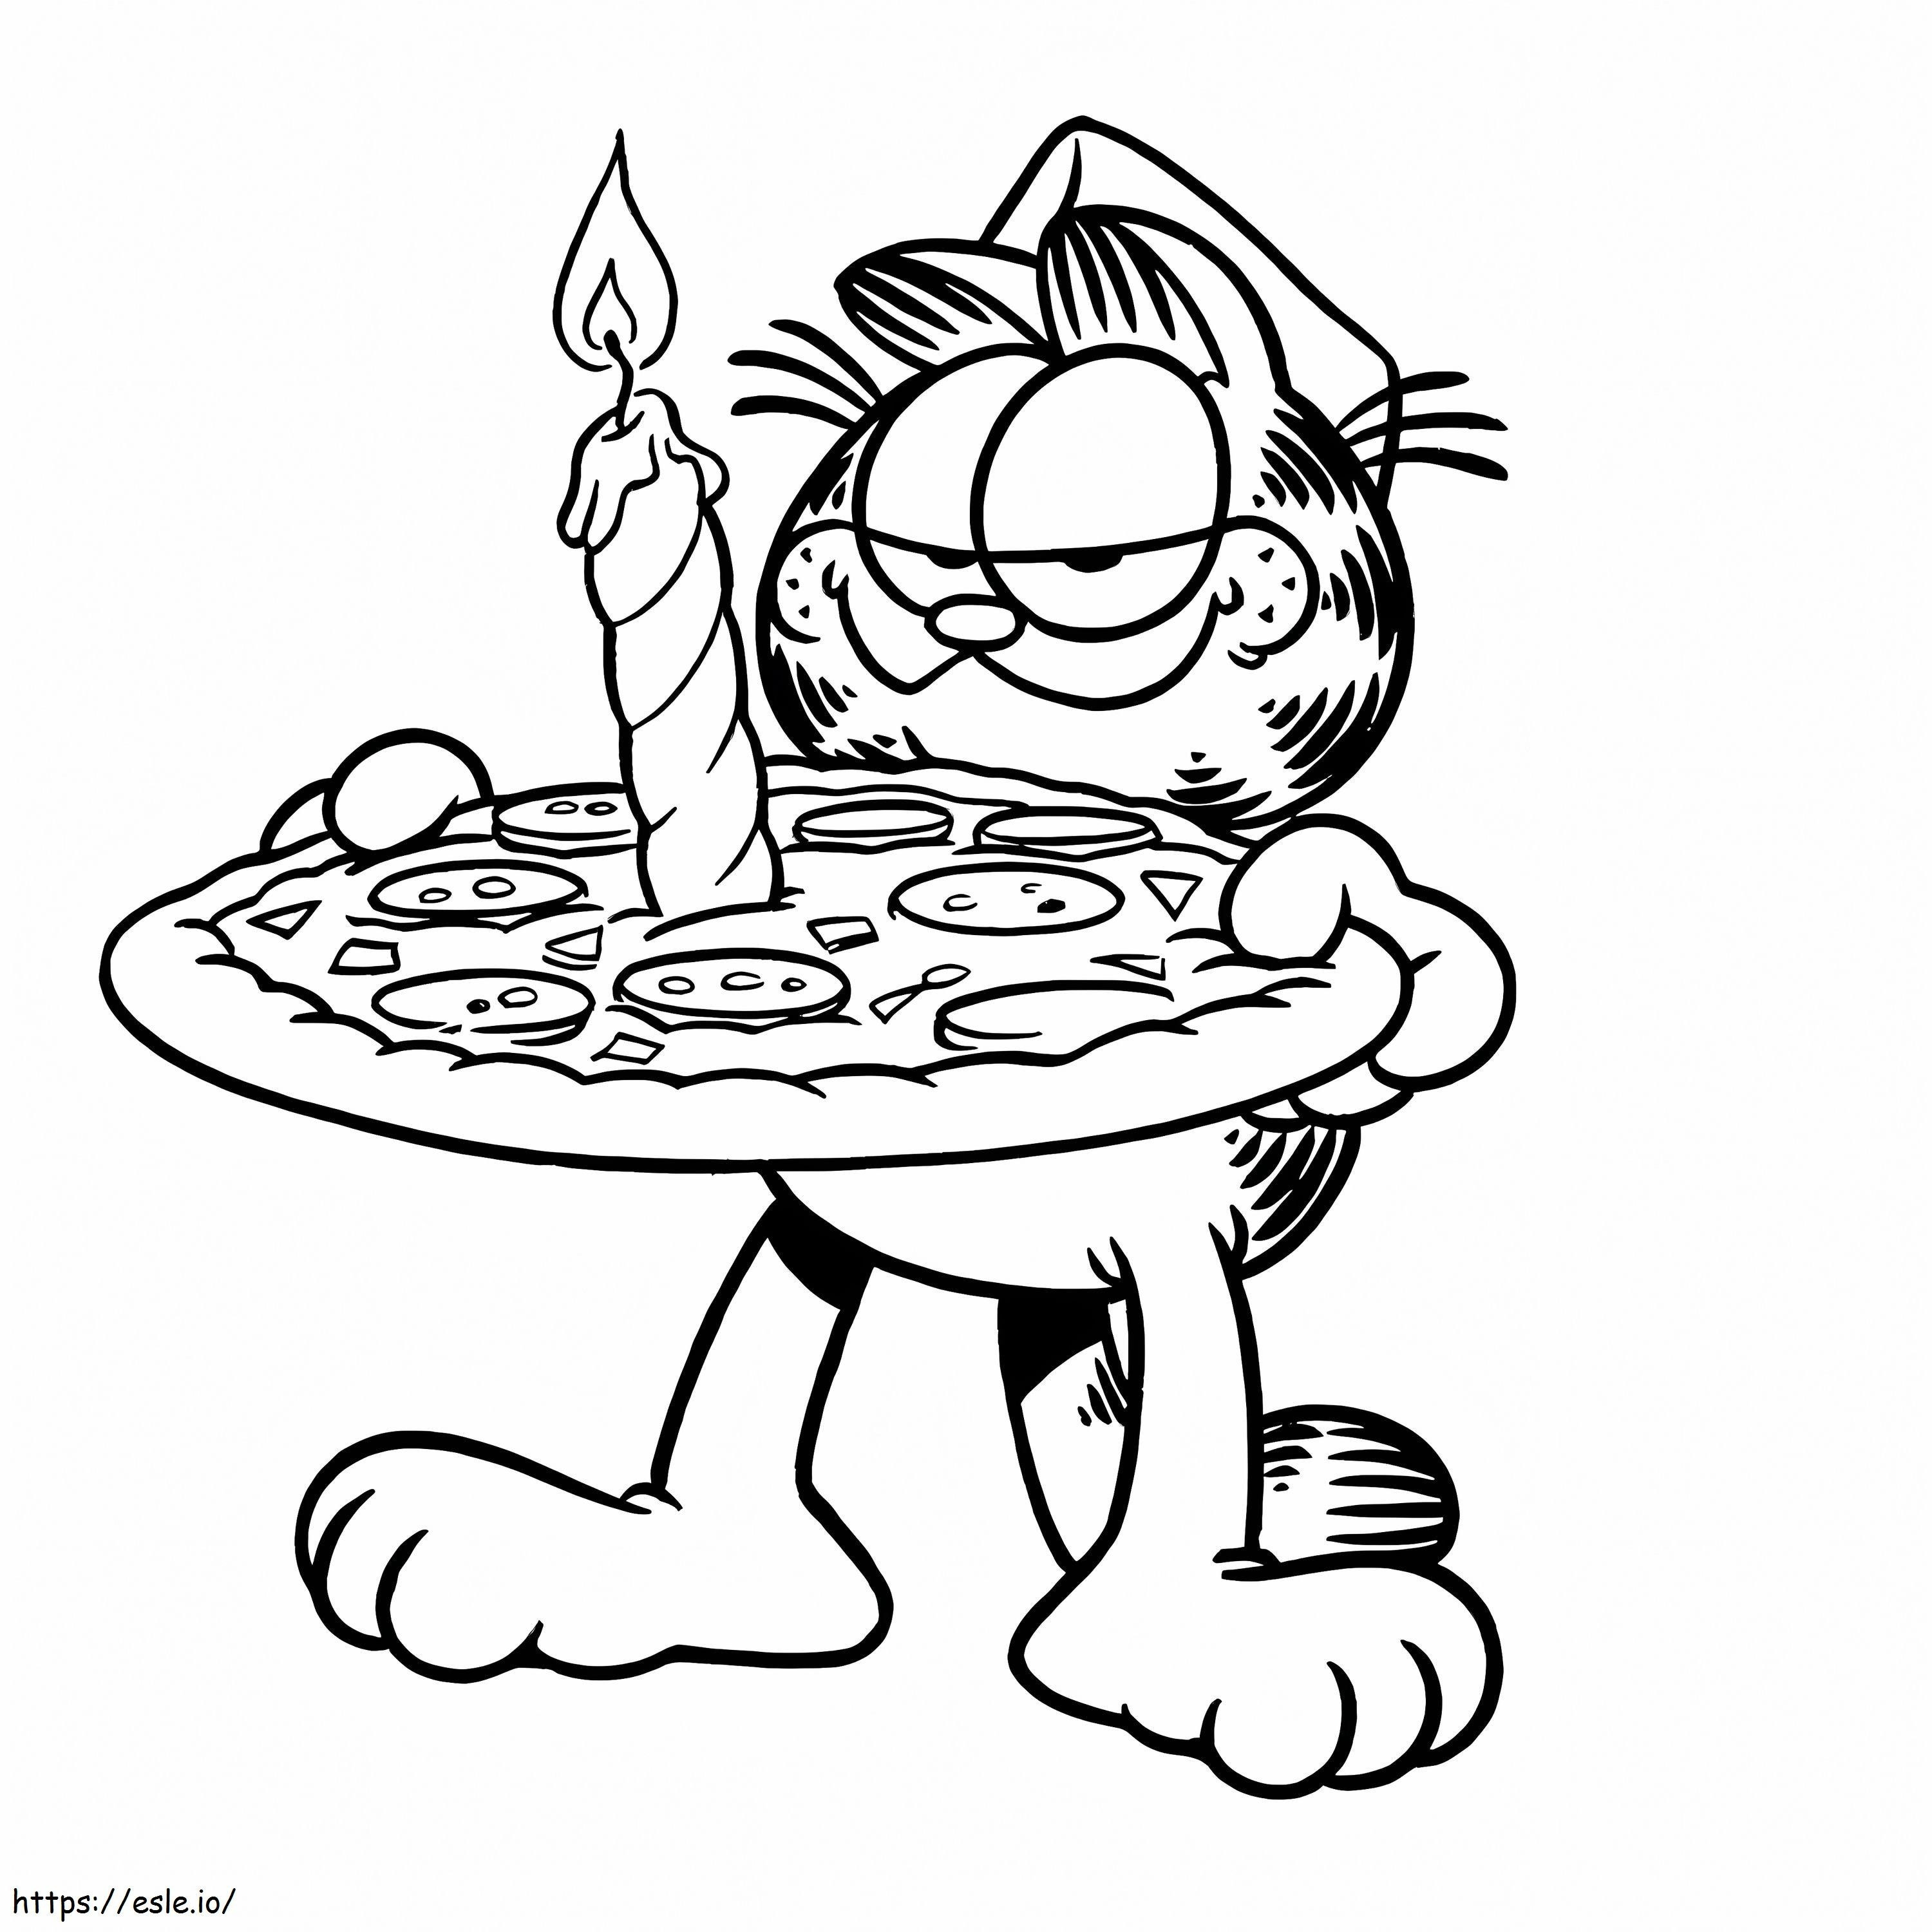 Gato de dibujos animados comiendo pizza para colorear